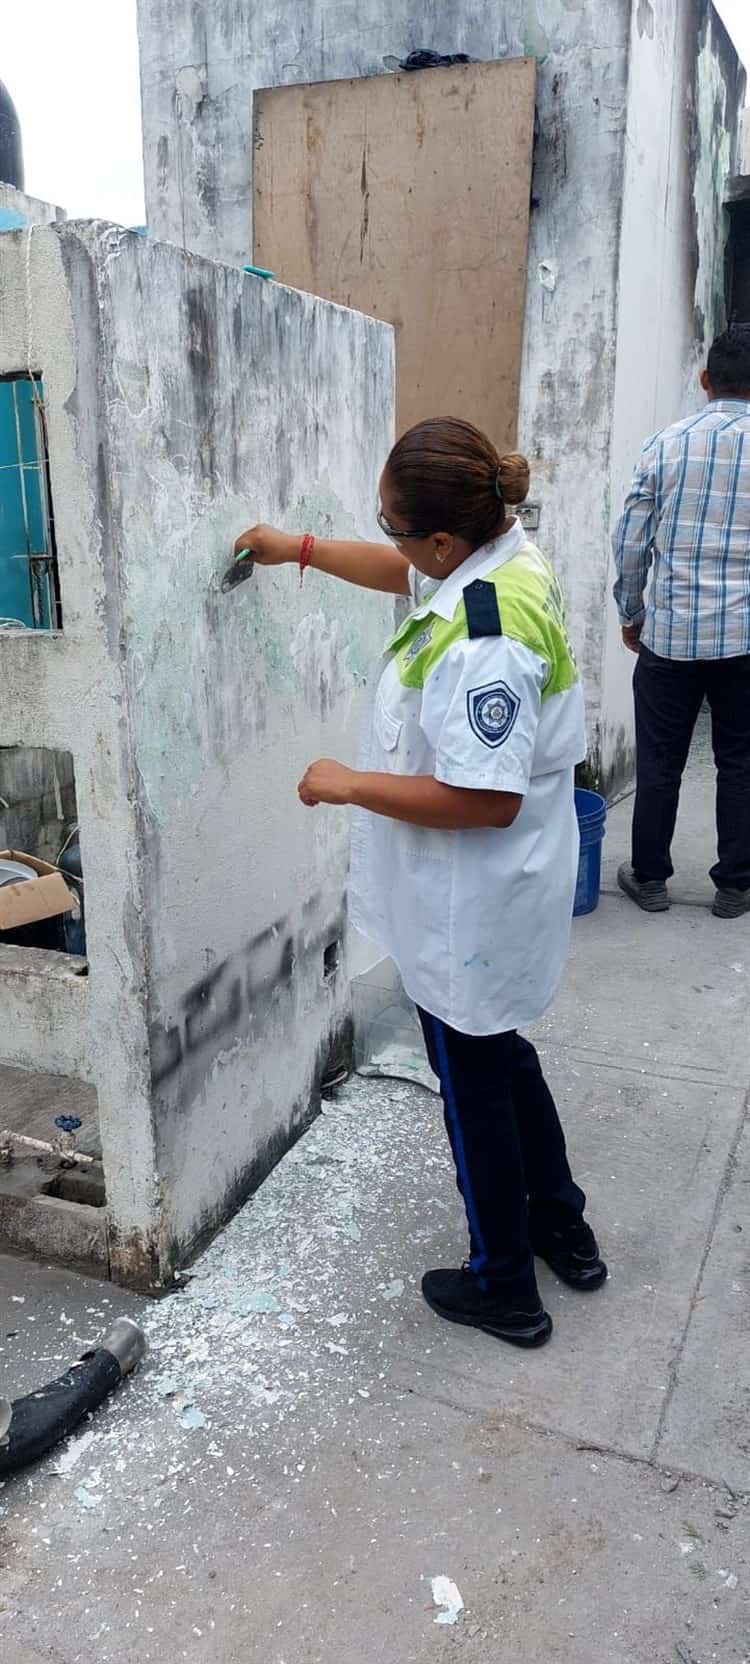 Oficiales de Tránsito de Manlio Fabio apoyan a víctimas de incendio en Veracruz